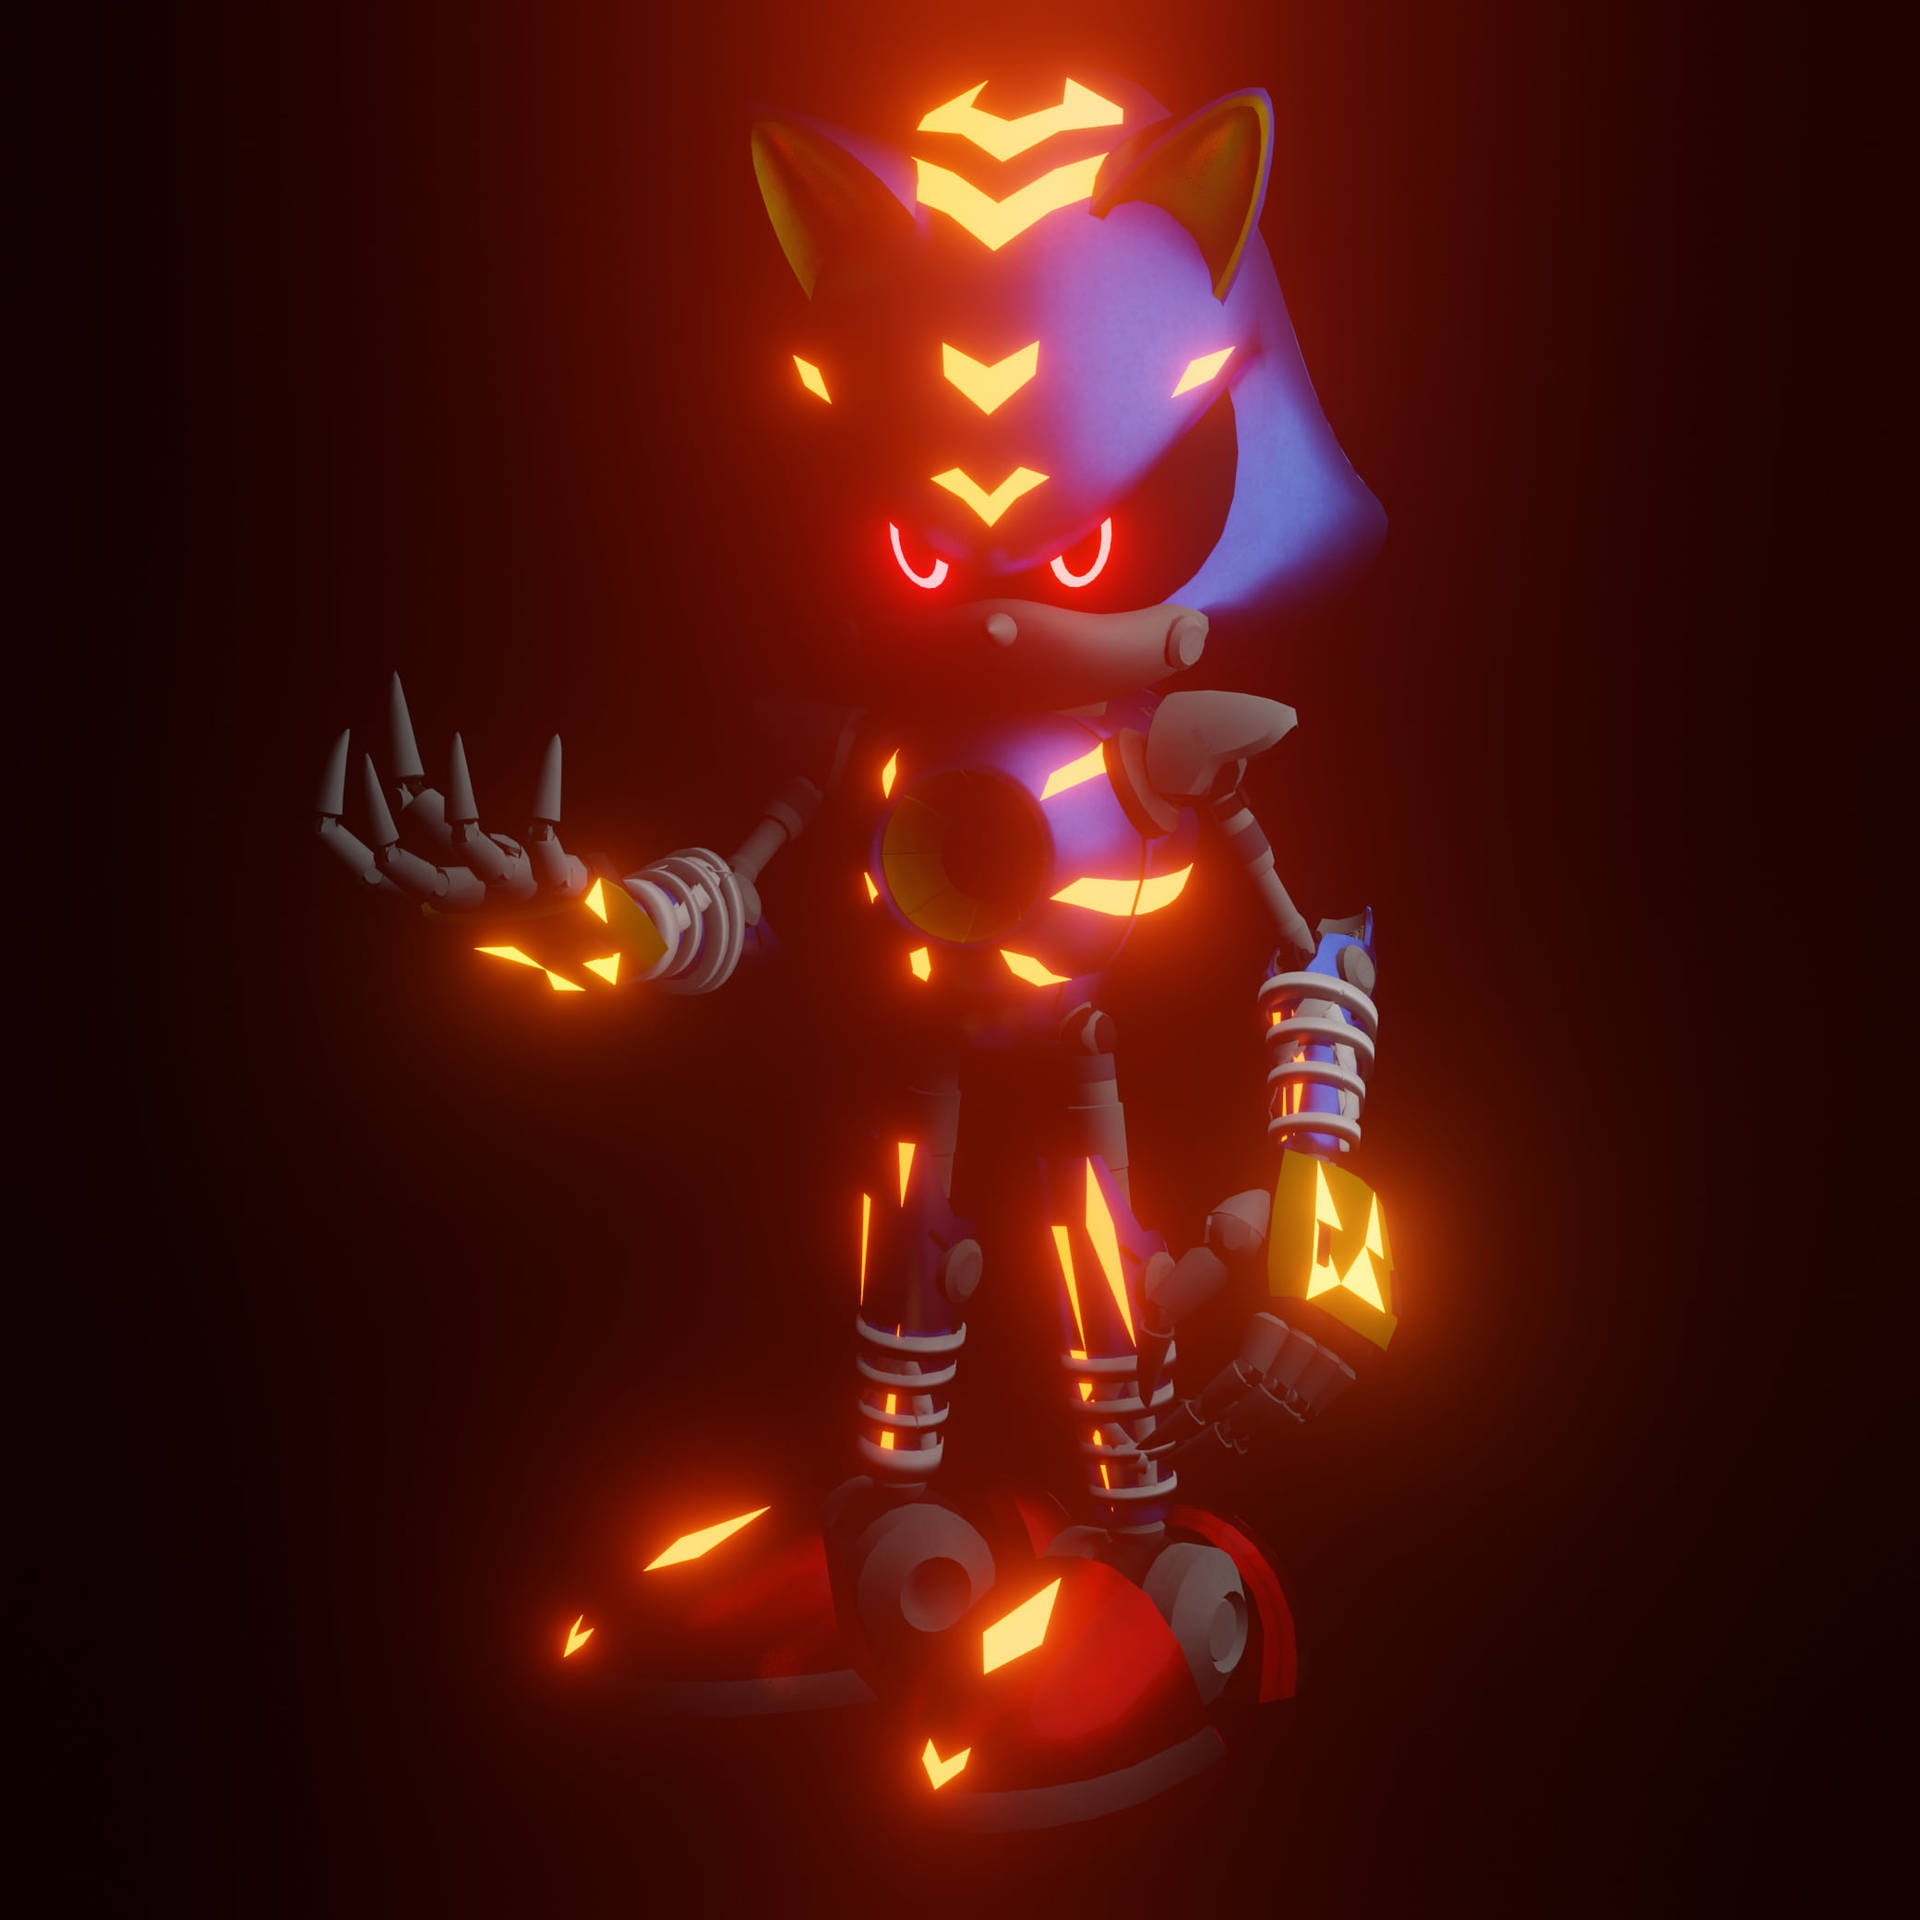 Metal Sonic Fiery Body